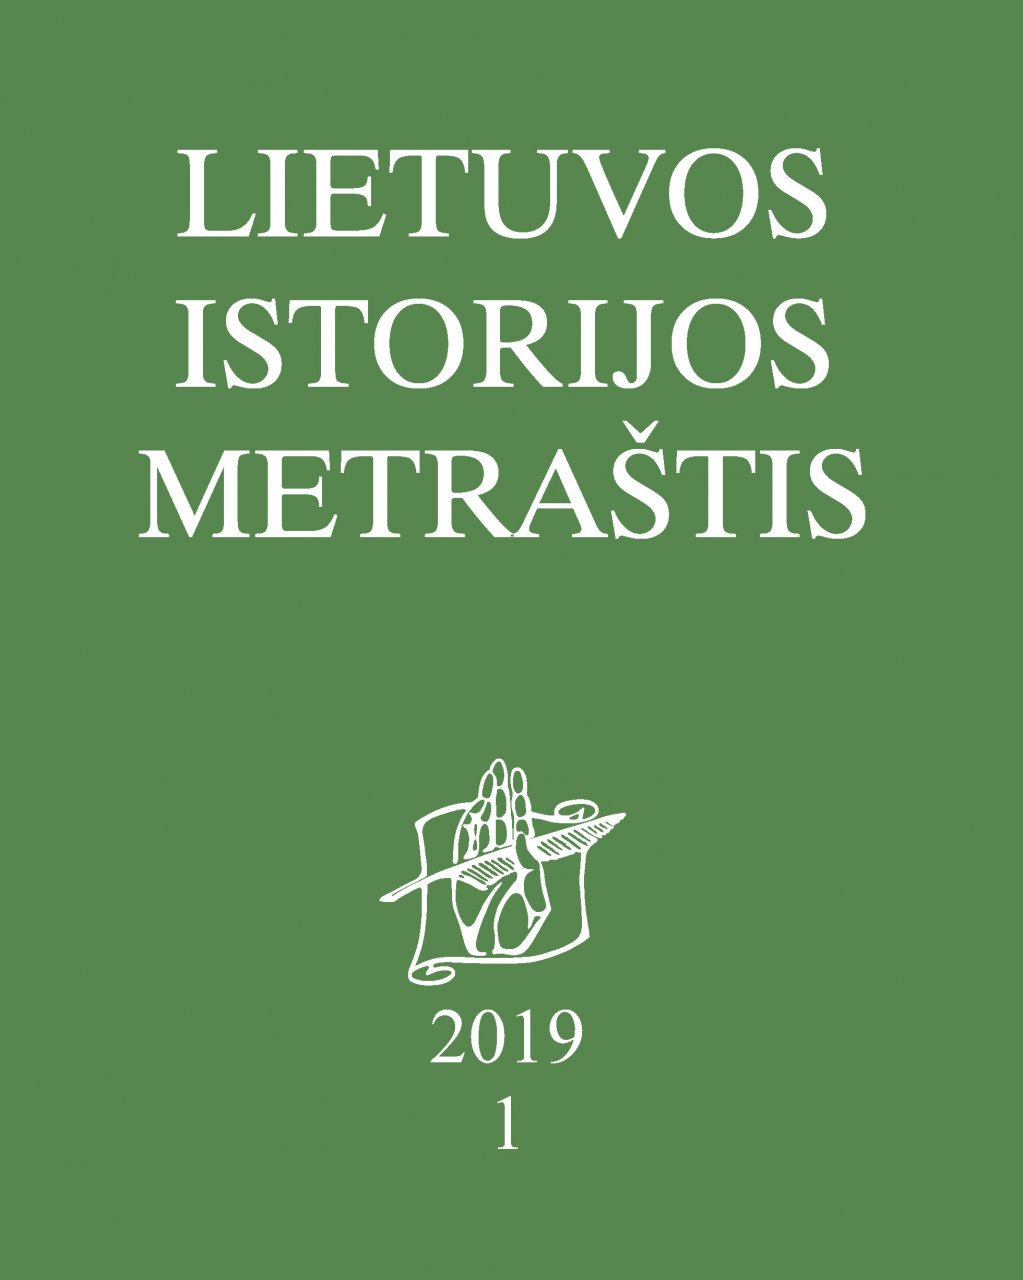 Lietuvos istorijos metraštis 2019 metai 1